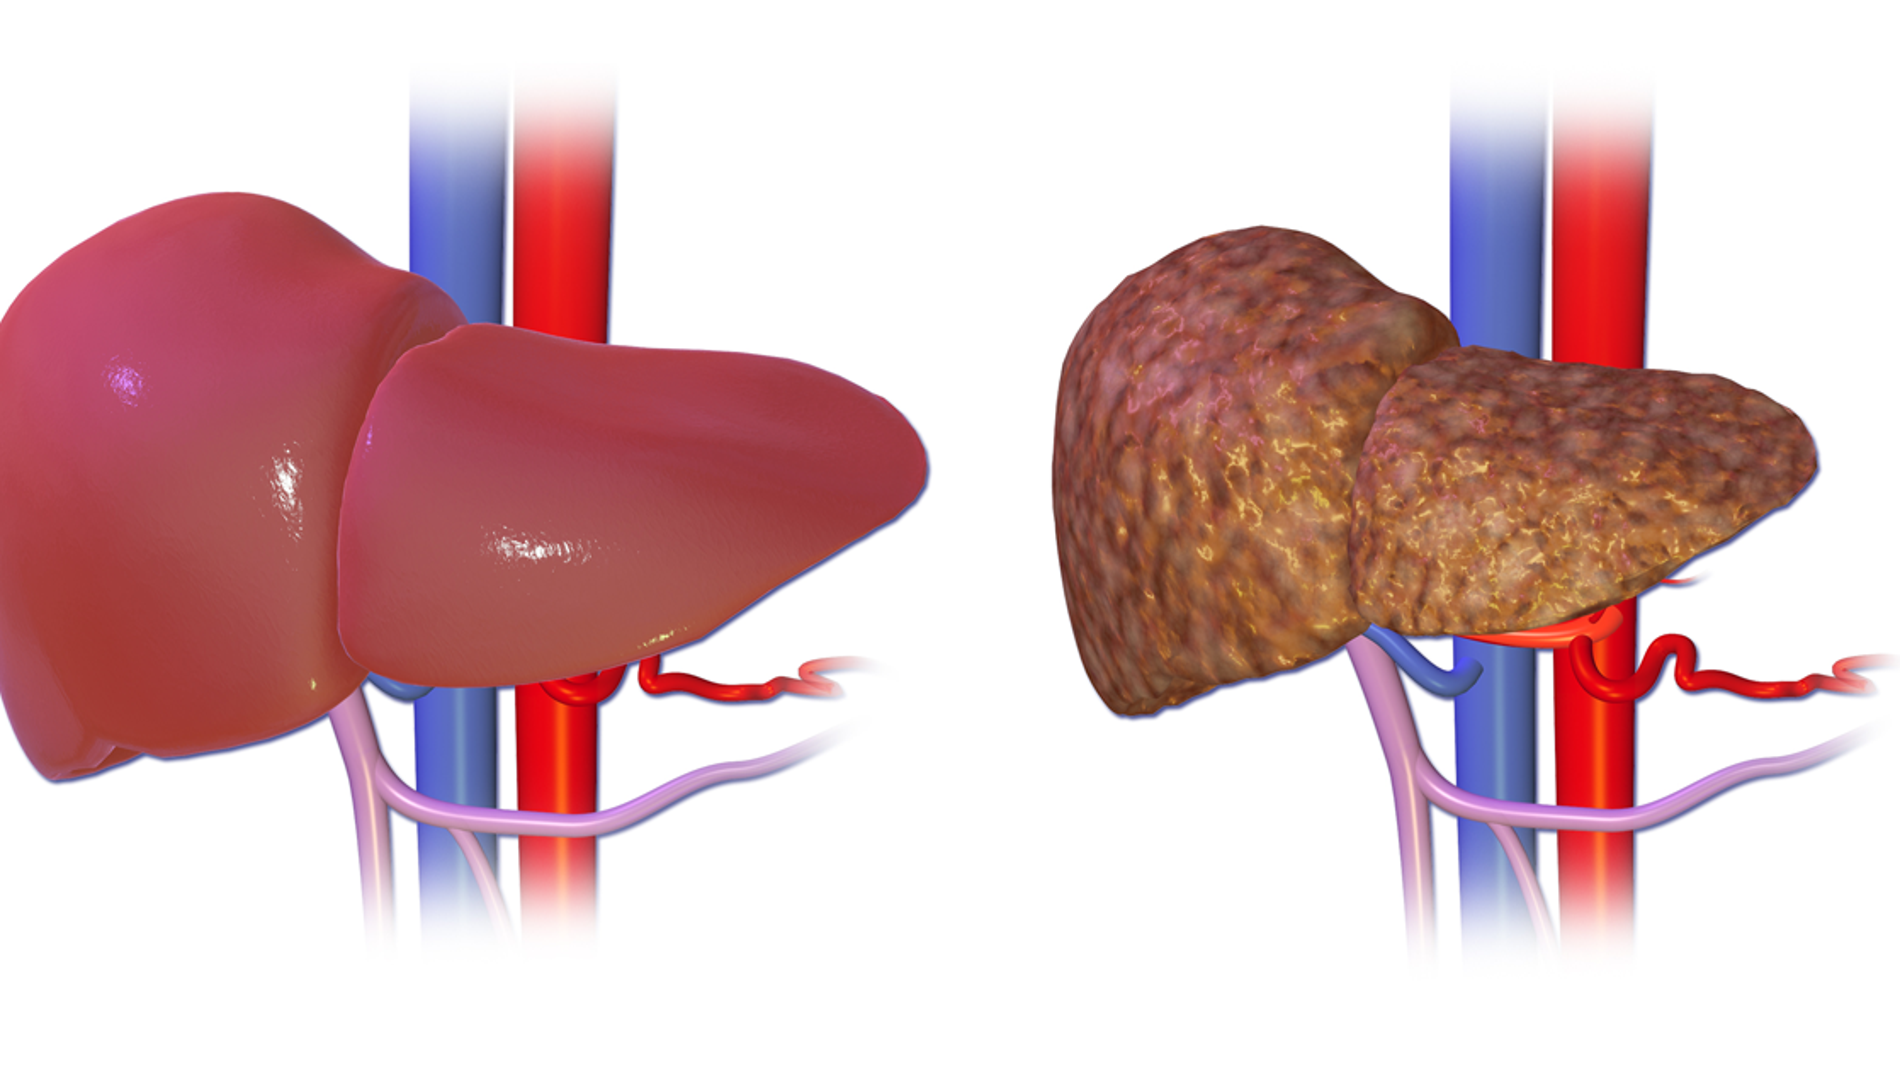 El hígado normal comparado con un hígado con cirrosis